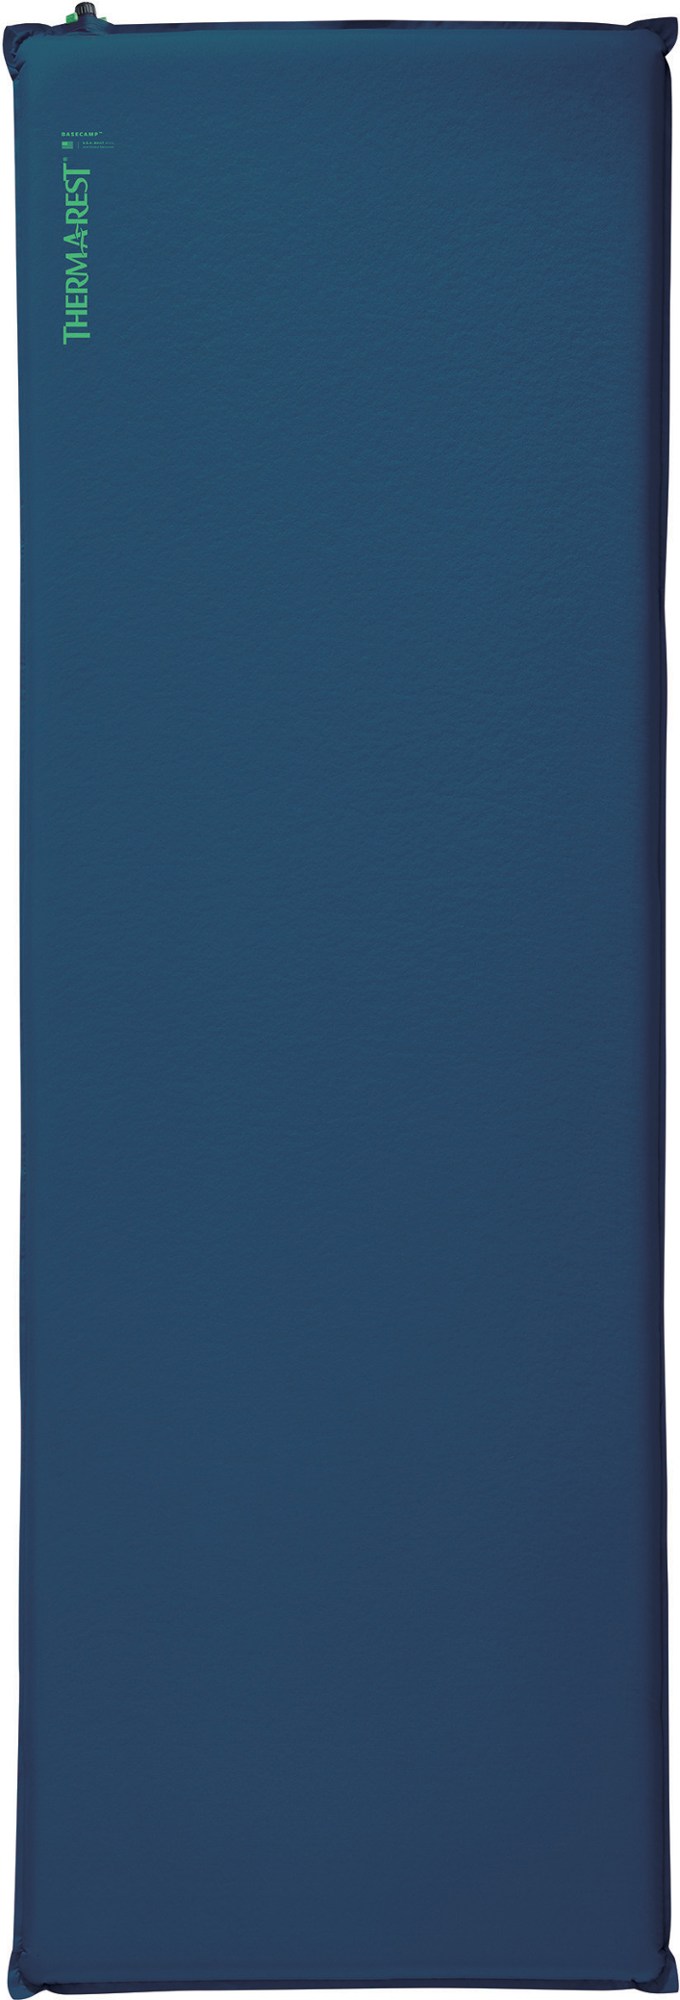 Спальный коврик BaseCamp Therm-a-Rest, синий коврик самонадувающийся ​therm a rest prolite plus regular